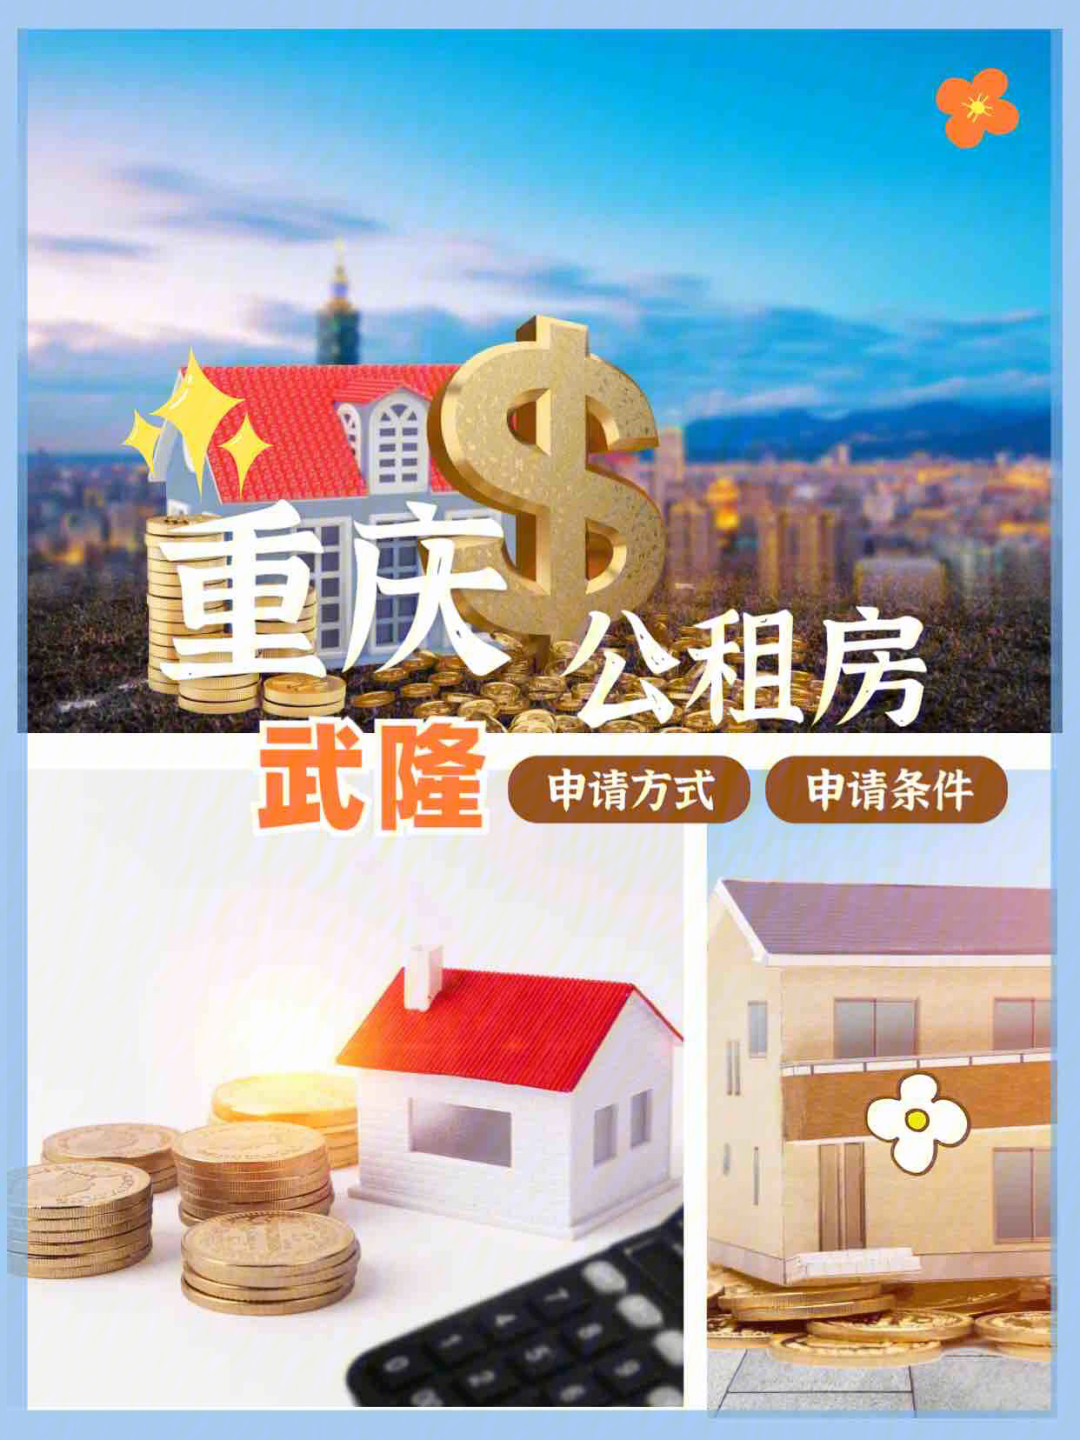 重庆又一区公租房廉租房开始申请